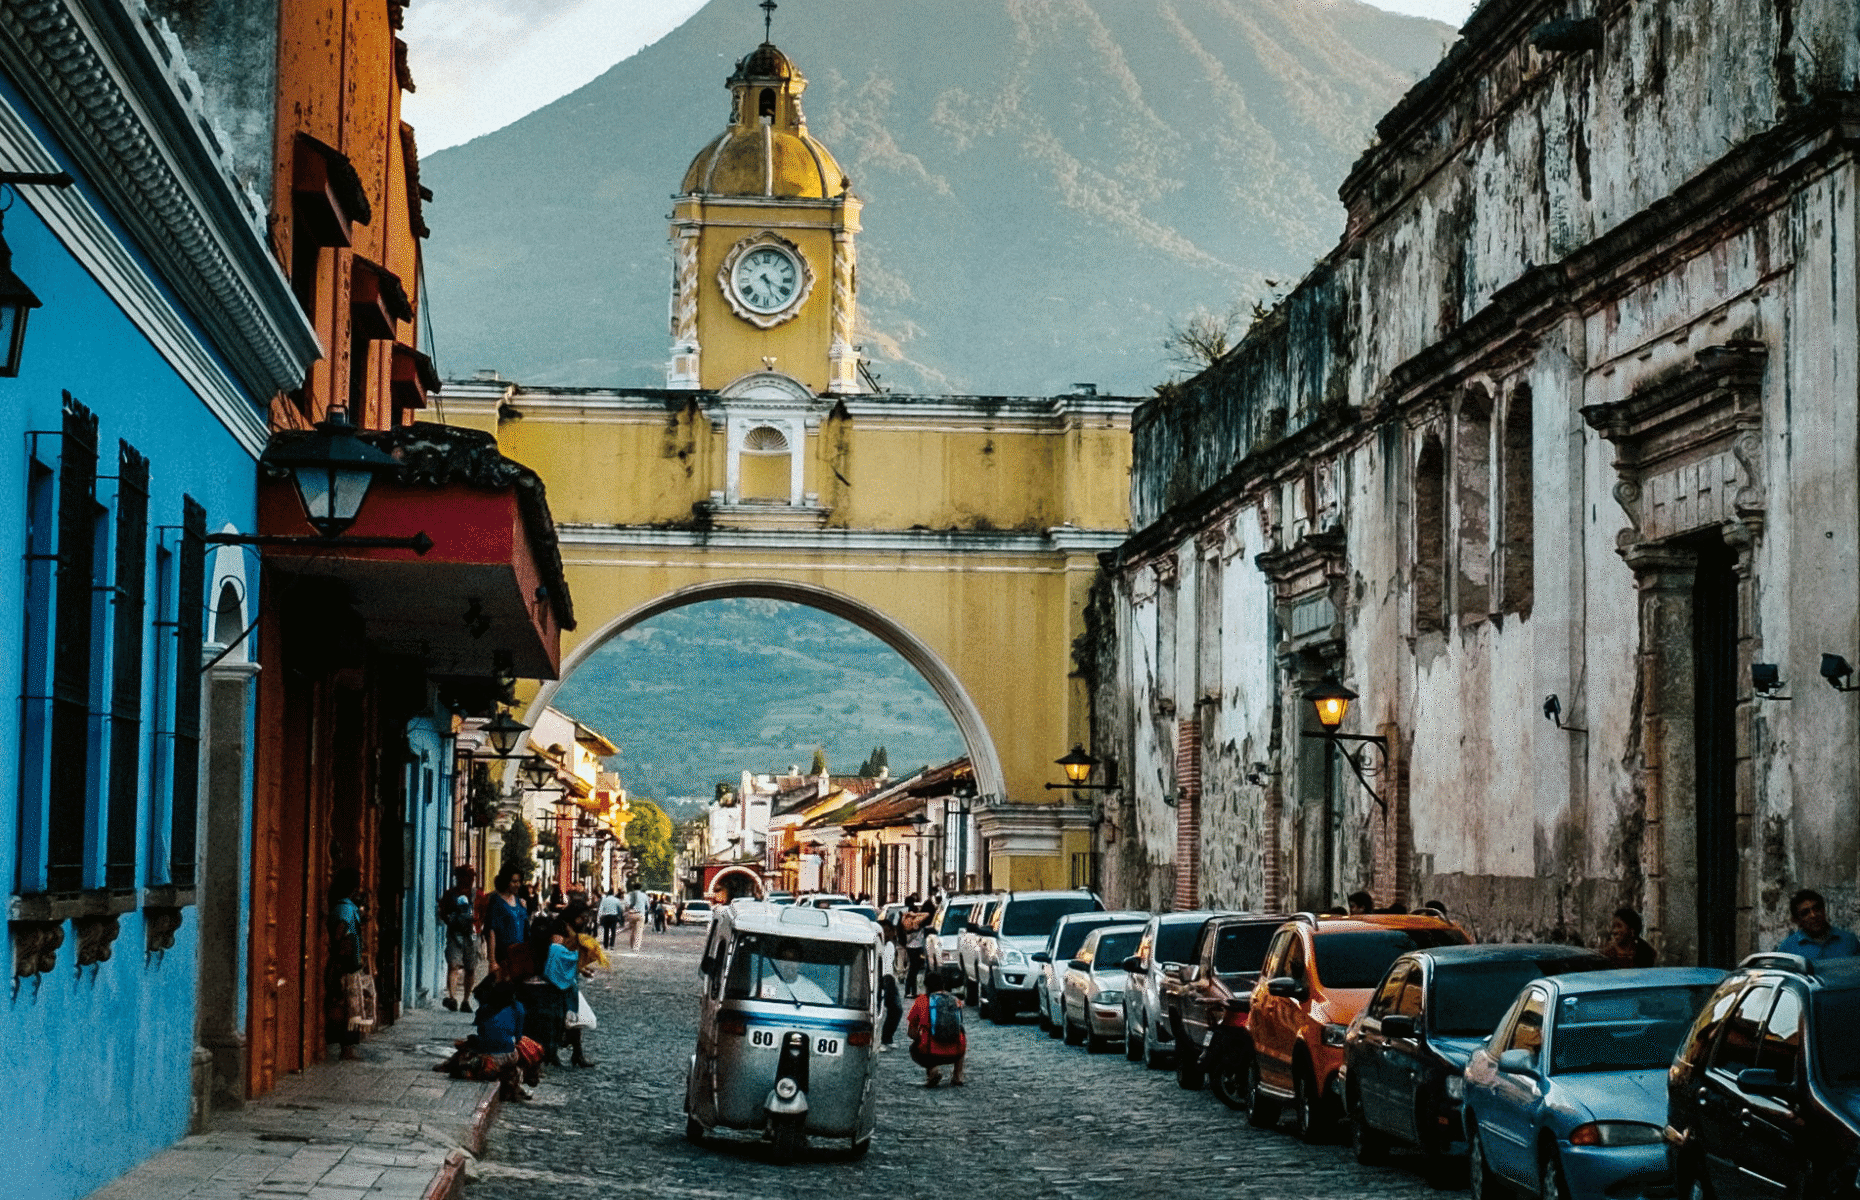 <p>À un jet de pierre de destinations plus touristiques comme le Nicaragua et le Costa Rica se trouve le <a href="https://www.enjoyguatemala.com/" class="CMY_Link CMY_Valid" rel="noreferrer noopener">Guatemala</a>, un pays dont la culture gagne à être mieux connue. Situé en Amérique centrale, le Guatemala est un pays polyvalent qui offre un peu de tout aux touristes. La ville d’Antigua est une pittoresque cité coloniale à l’ambiance décontractée, mais c’est aussi une mine d’or pour les amoureux de la nature au tempérament aventureux. Le célèbre lac Atitlán est également une destination populaire. Il est entouré de pics volcaniques et habité par des communautés mayas et des ruines. </p>